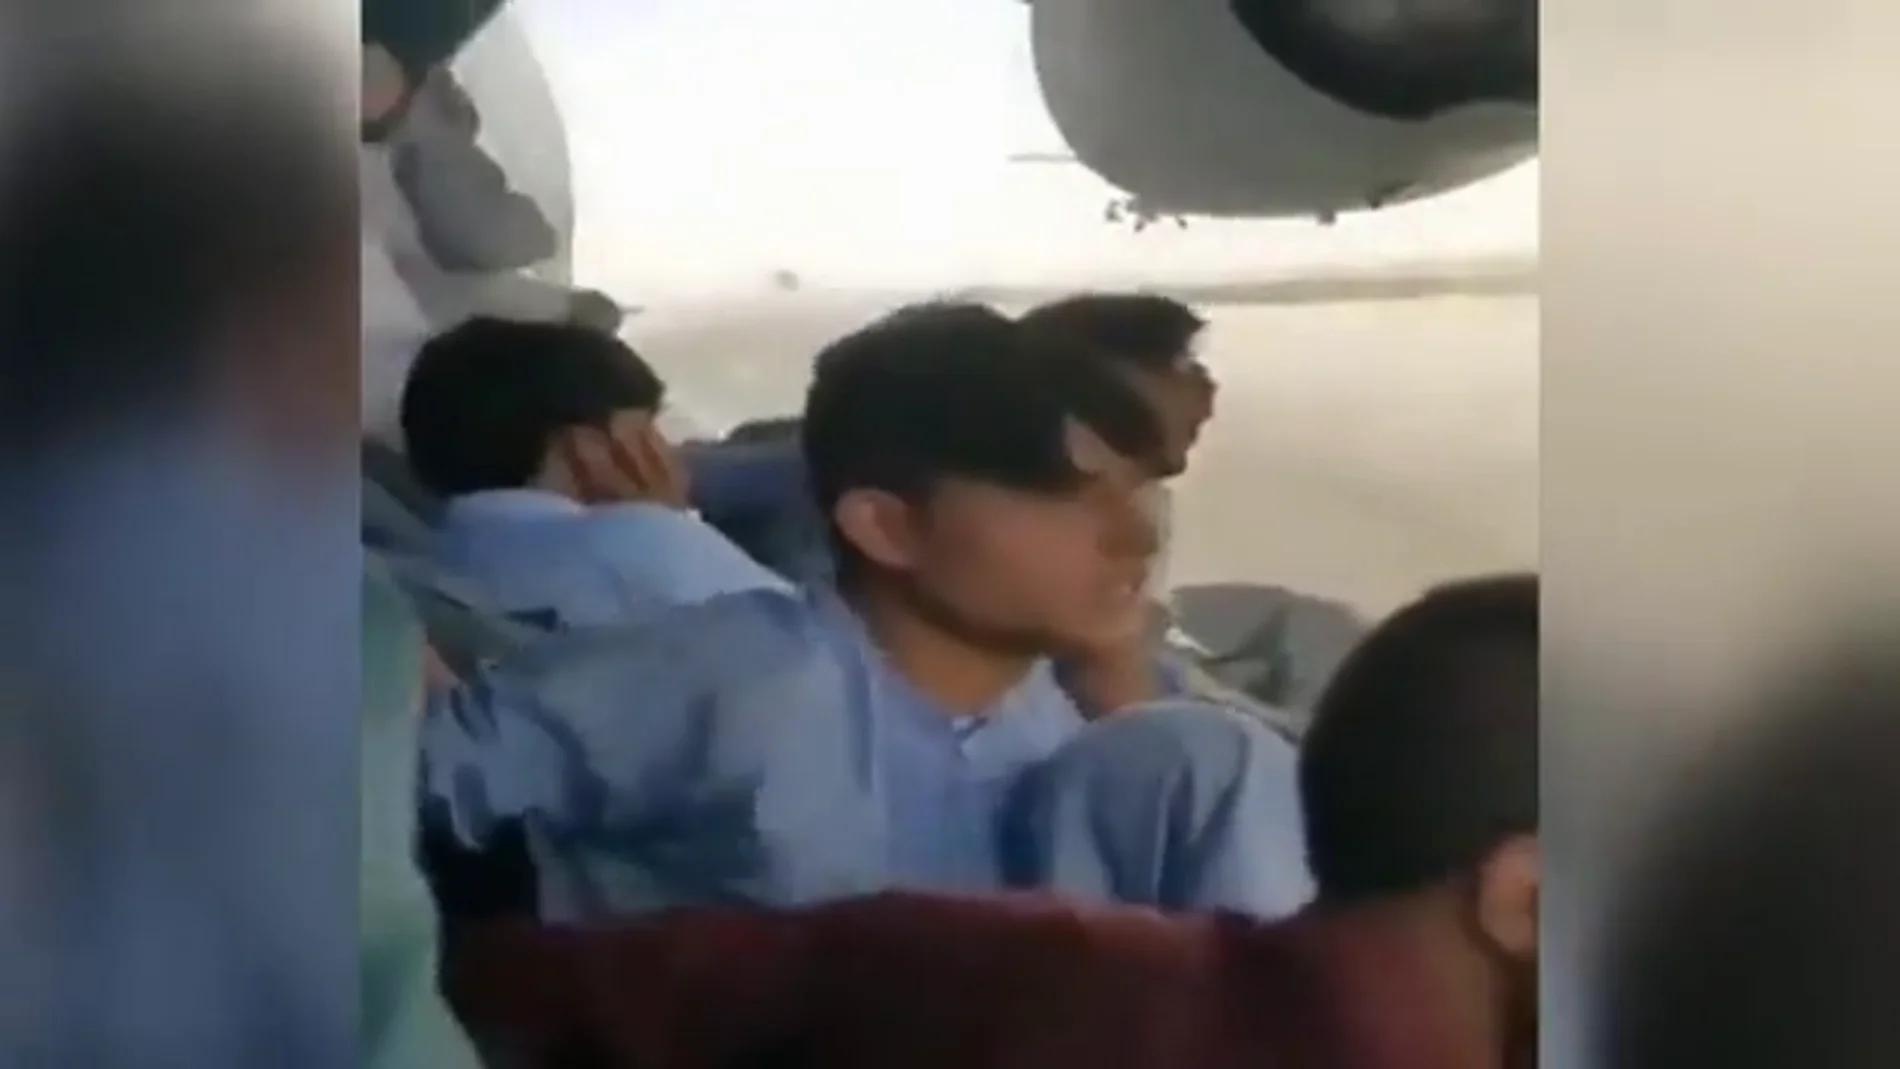 El video de uno de los afganos agarrados al fuselaje externo de un avión a punto de despegar Kabul